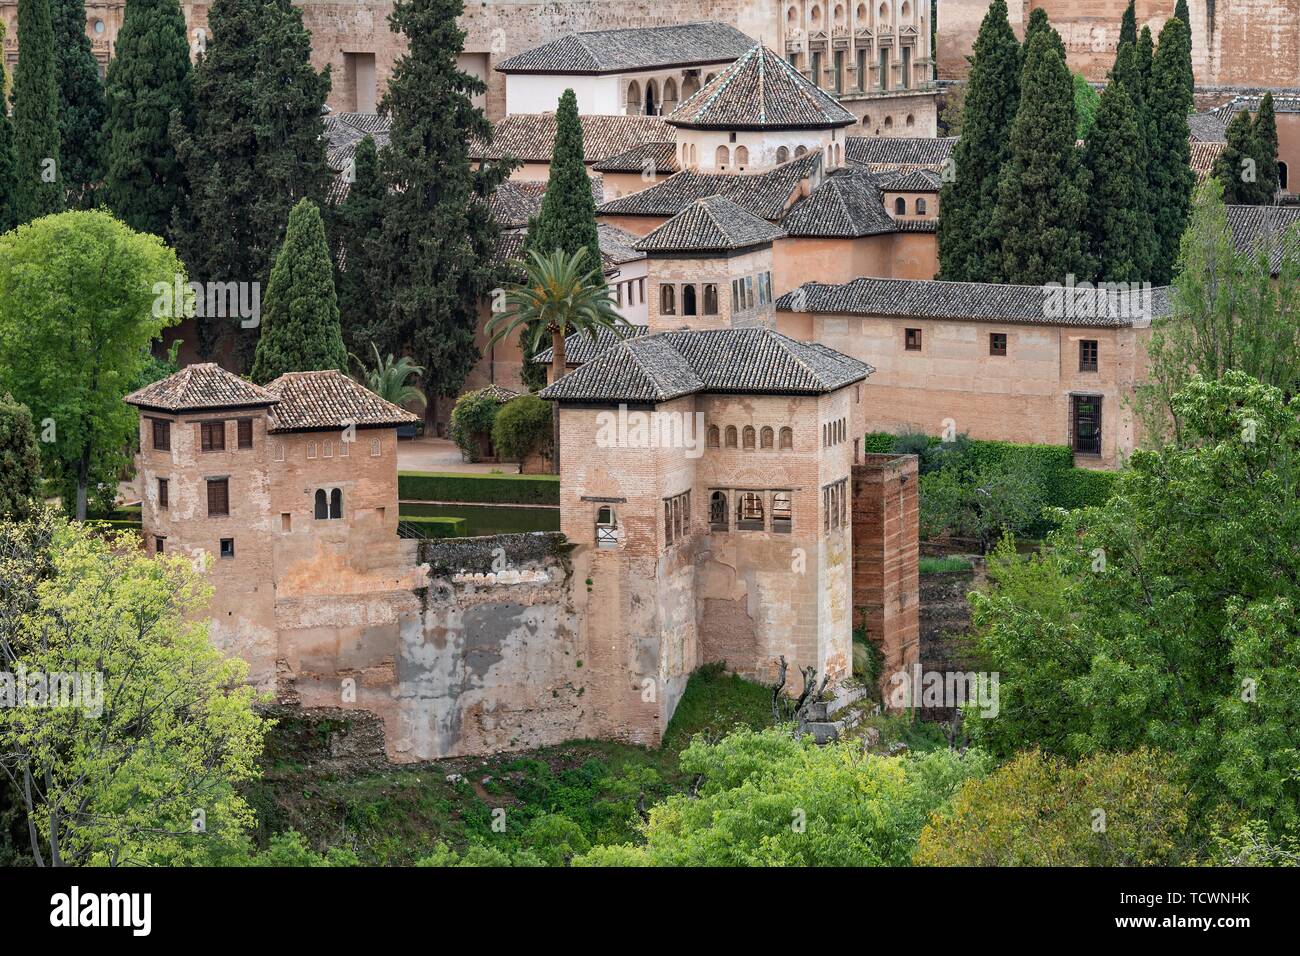 Palais Nasrides, château de ville mauresque de l'Alhambra, site du patrimoine mondial de l'UNESCO, Grenade, Andalousie, Espagne Banque D'Images